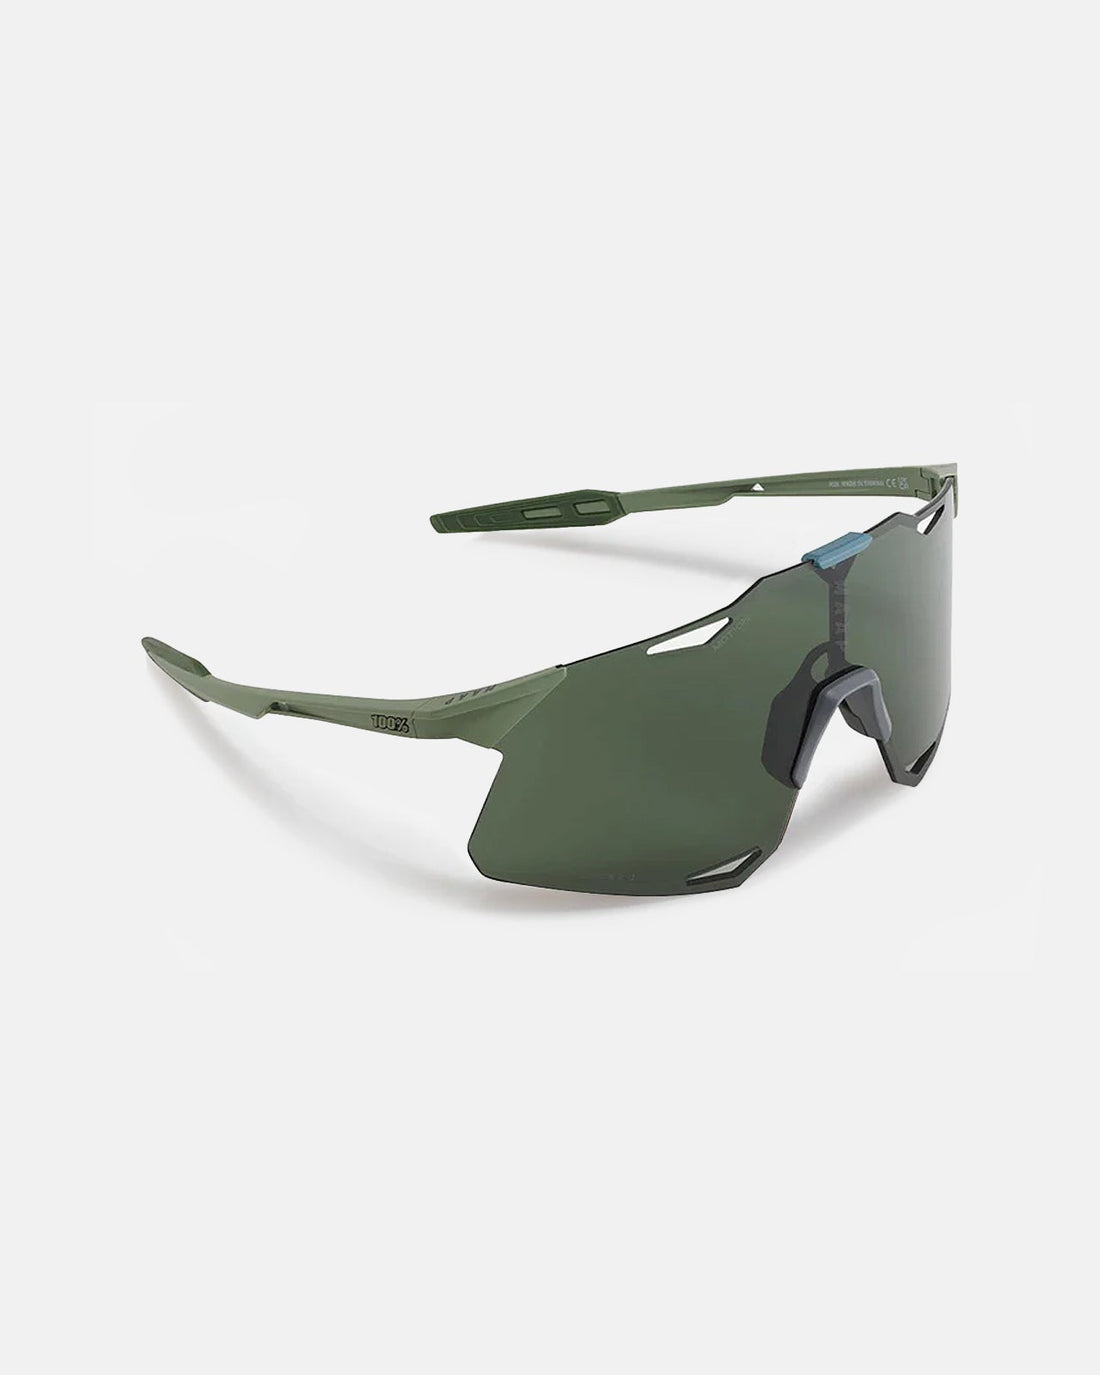 MAAP x 100% Hypercraft Sunglasses - Forest Green